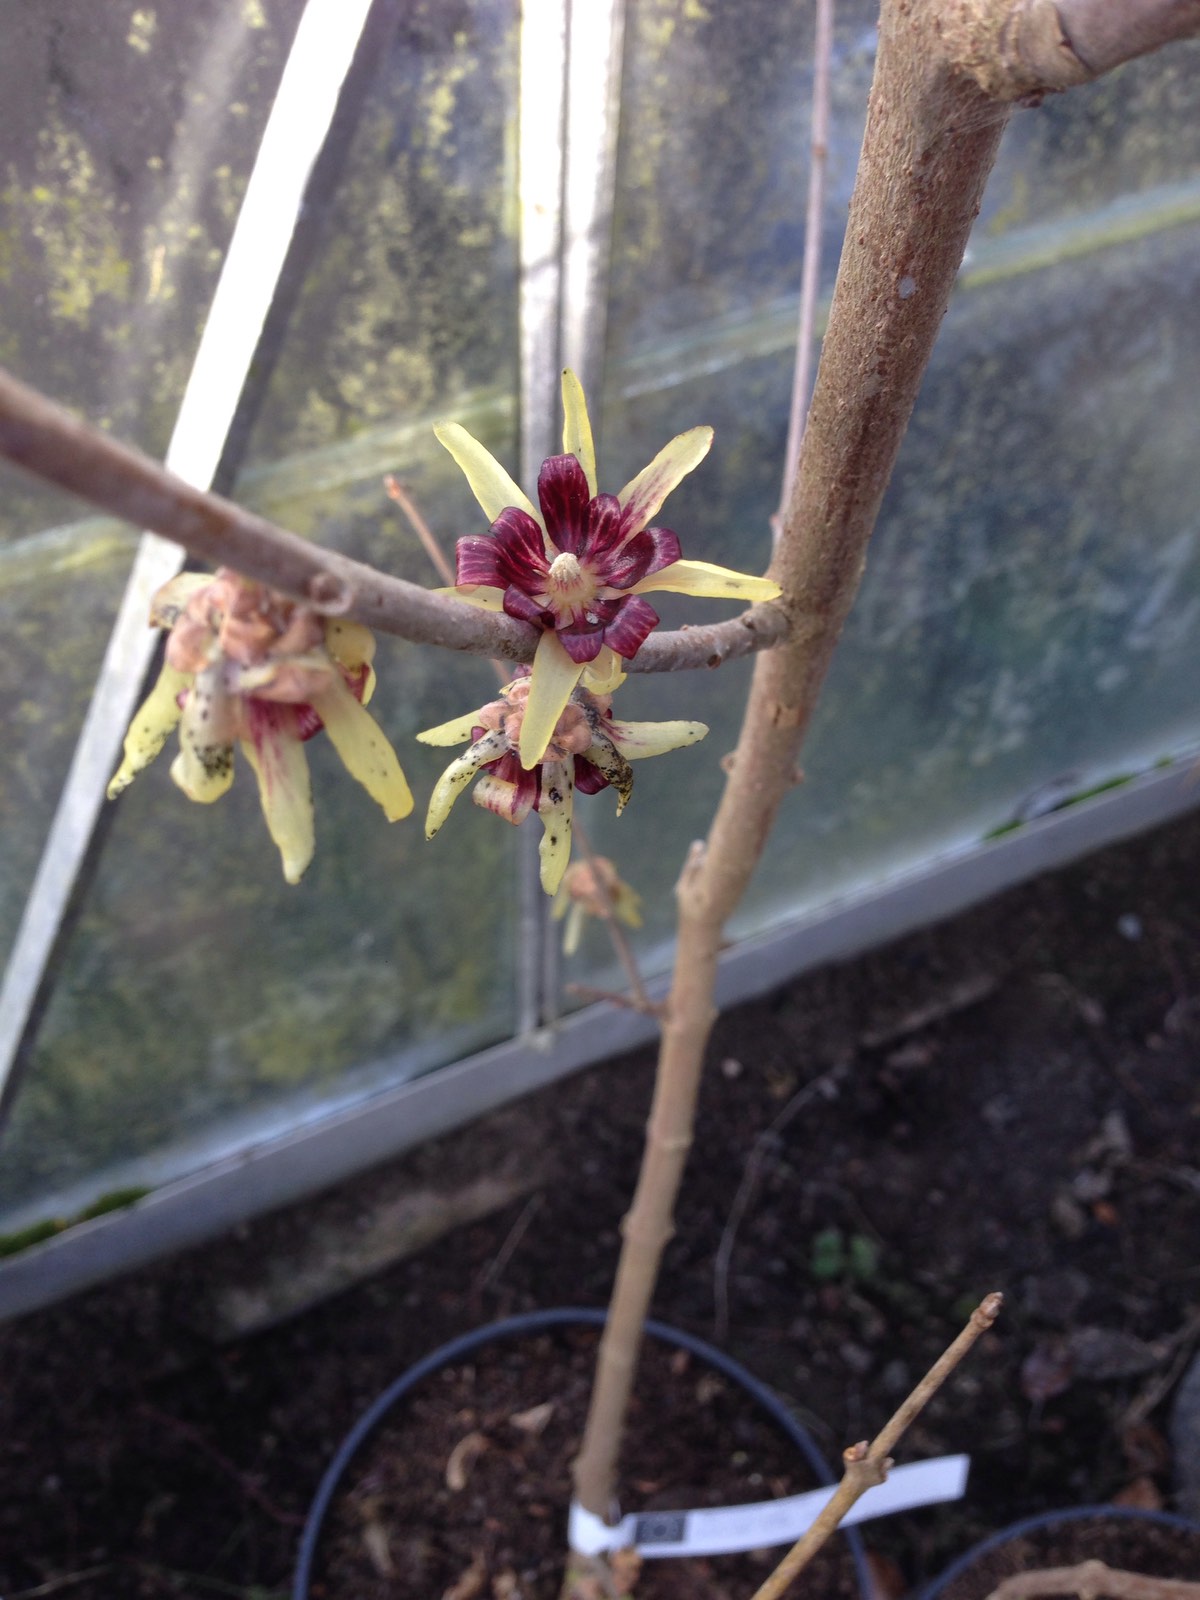 Vinterkryddbuske - Chimonanthus praecox